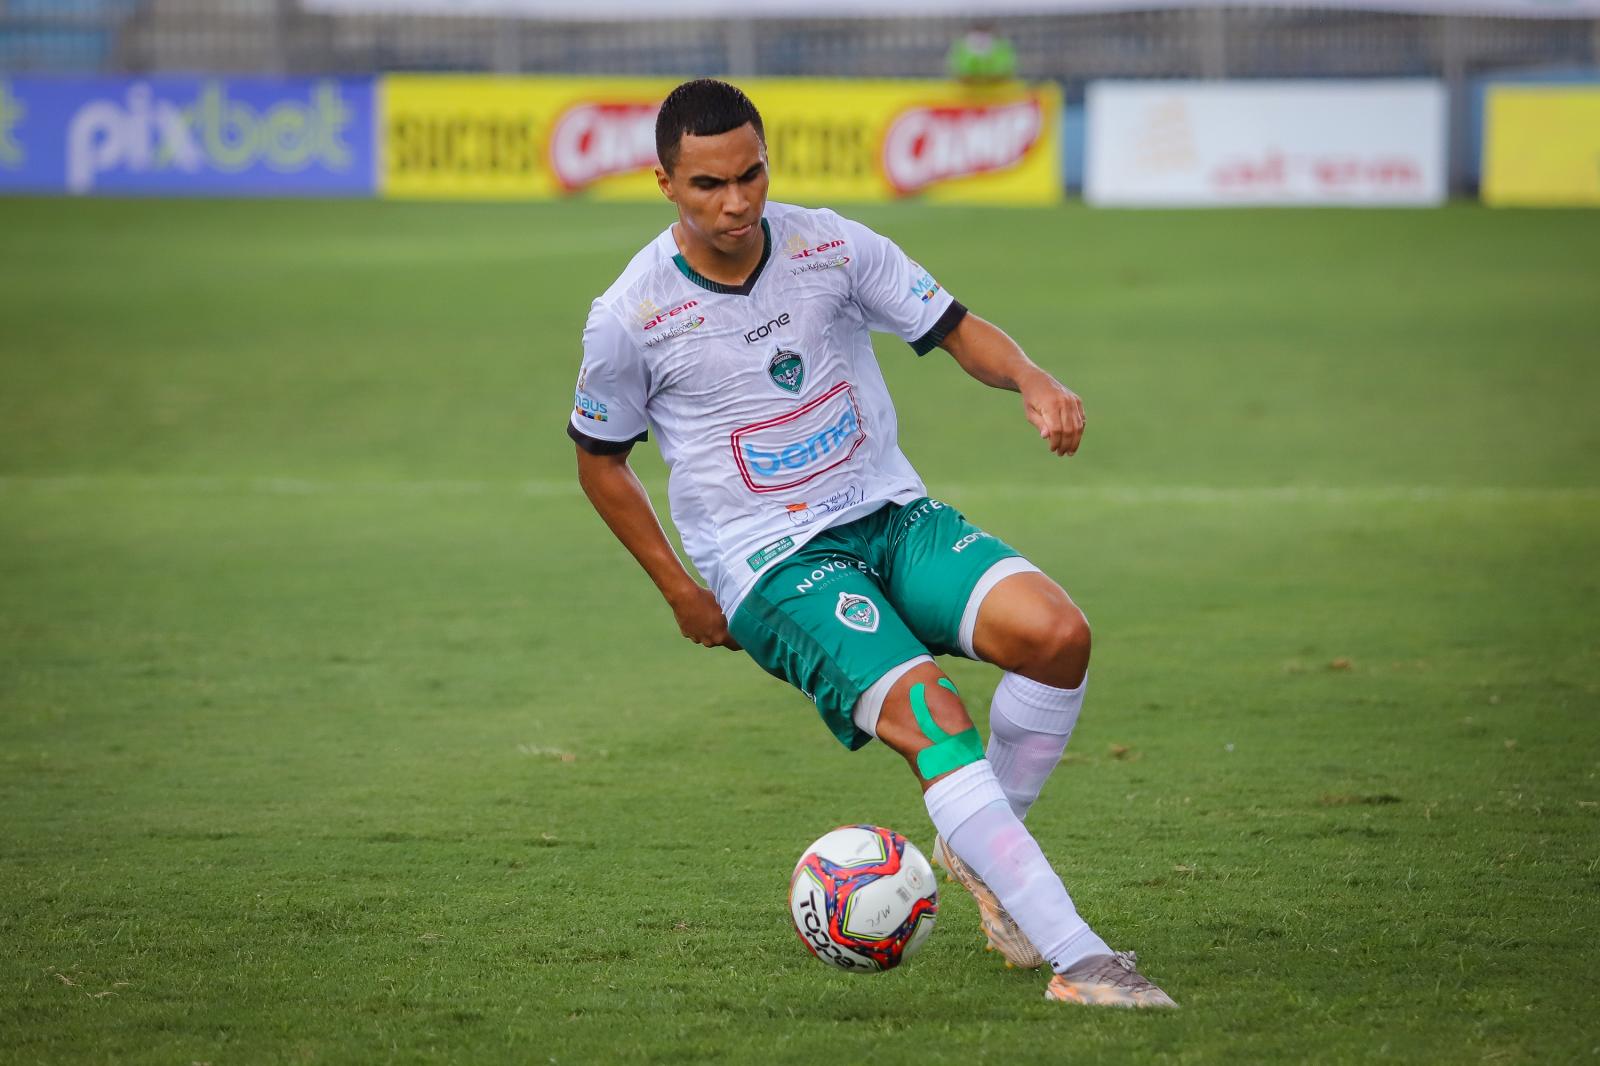 Manaus FC anuncia saída de Gabriel Davis, Dudu Mandai e Rafhael Lucas